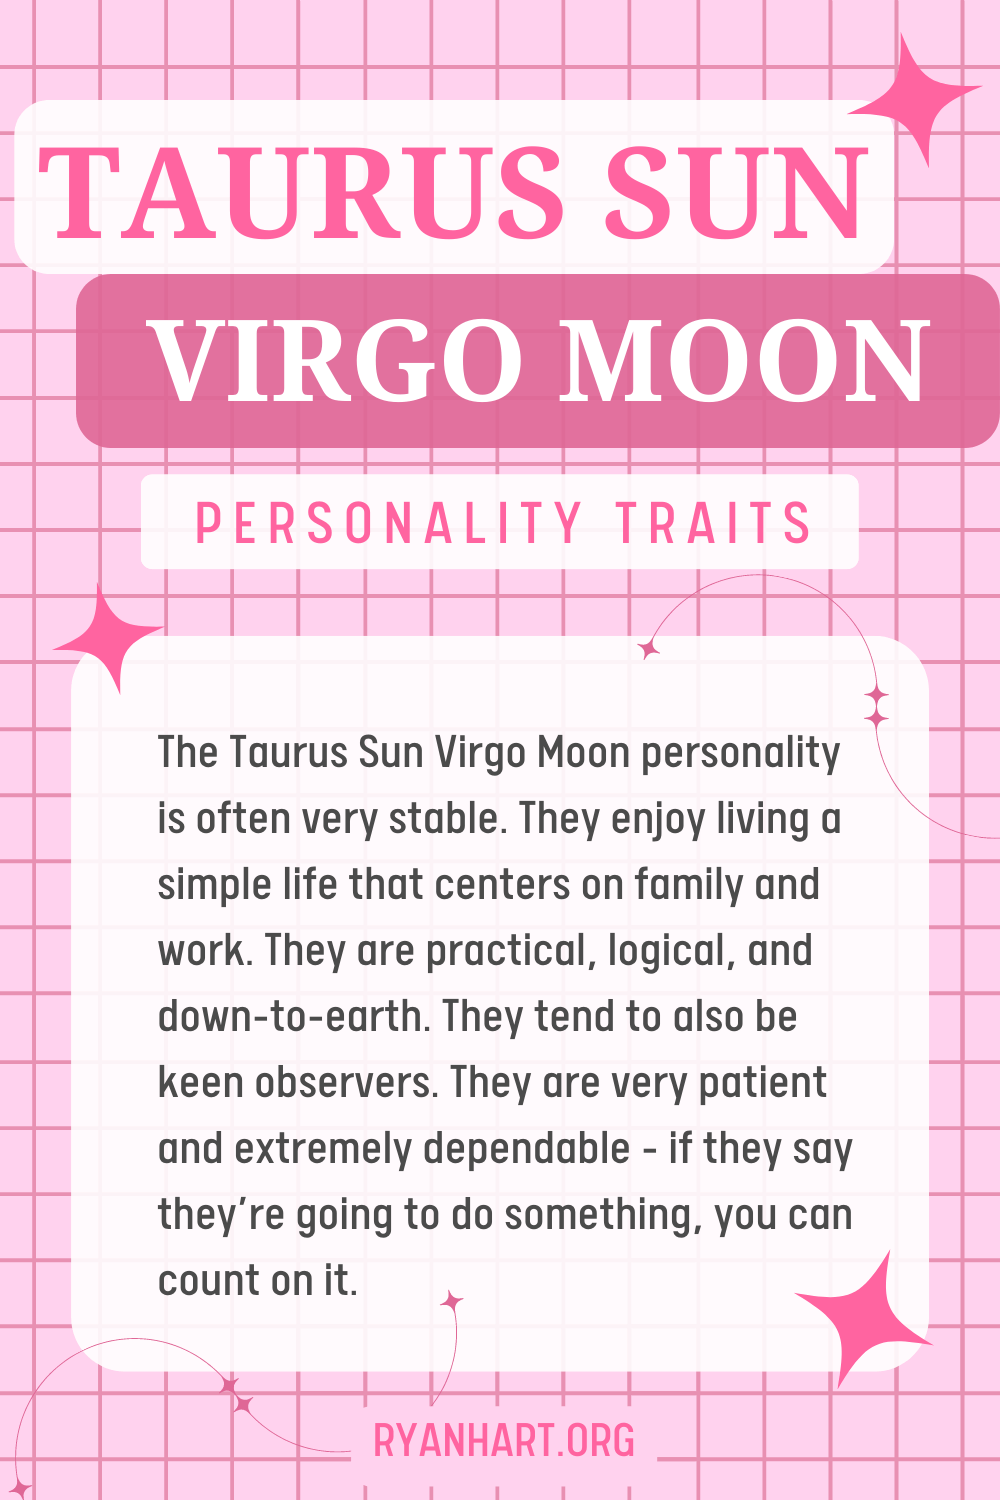 Taurus Sun Virgo Moon Description